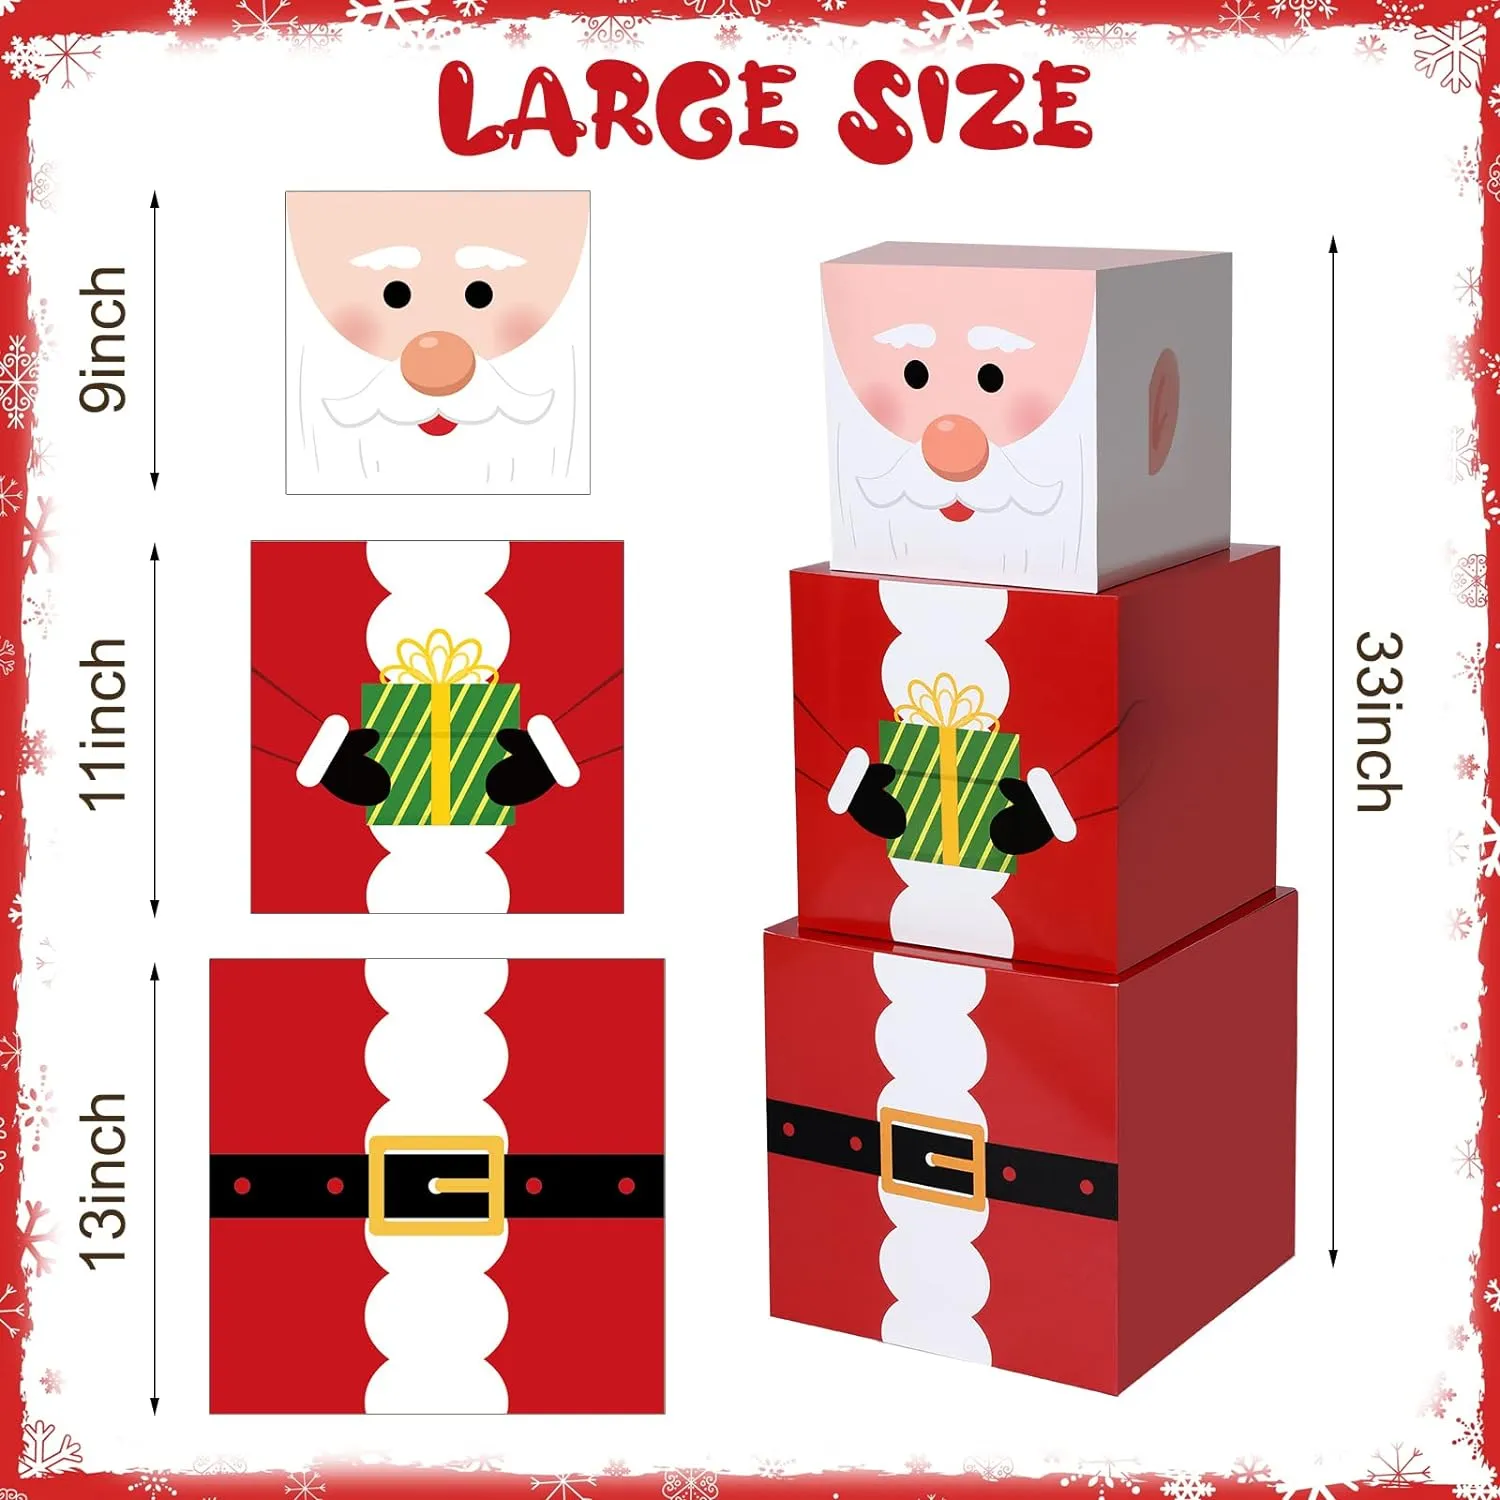 16 adet Noel istifleme kutuları 4 tasarımda şapka ile istiflenebilir kardan adam hediye kutusu Noel yuvalama kutuları dekoratif Noel istifleme hediyesi